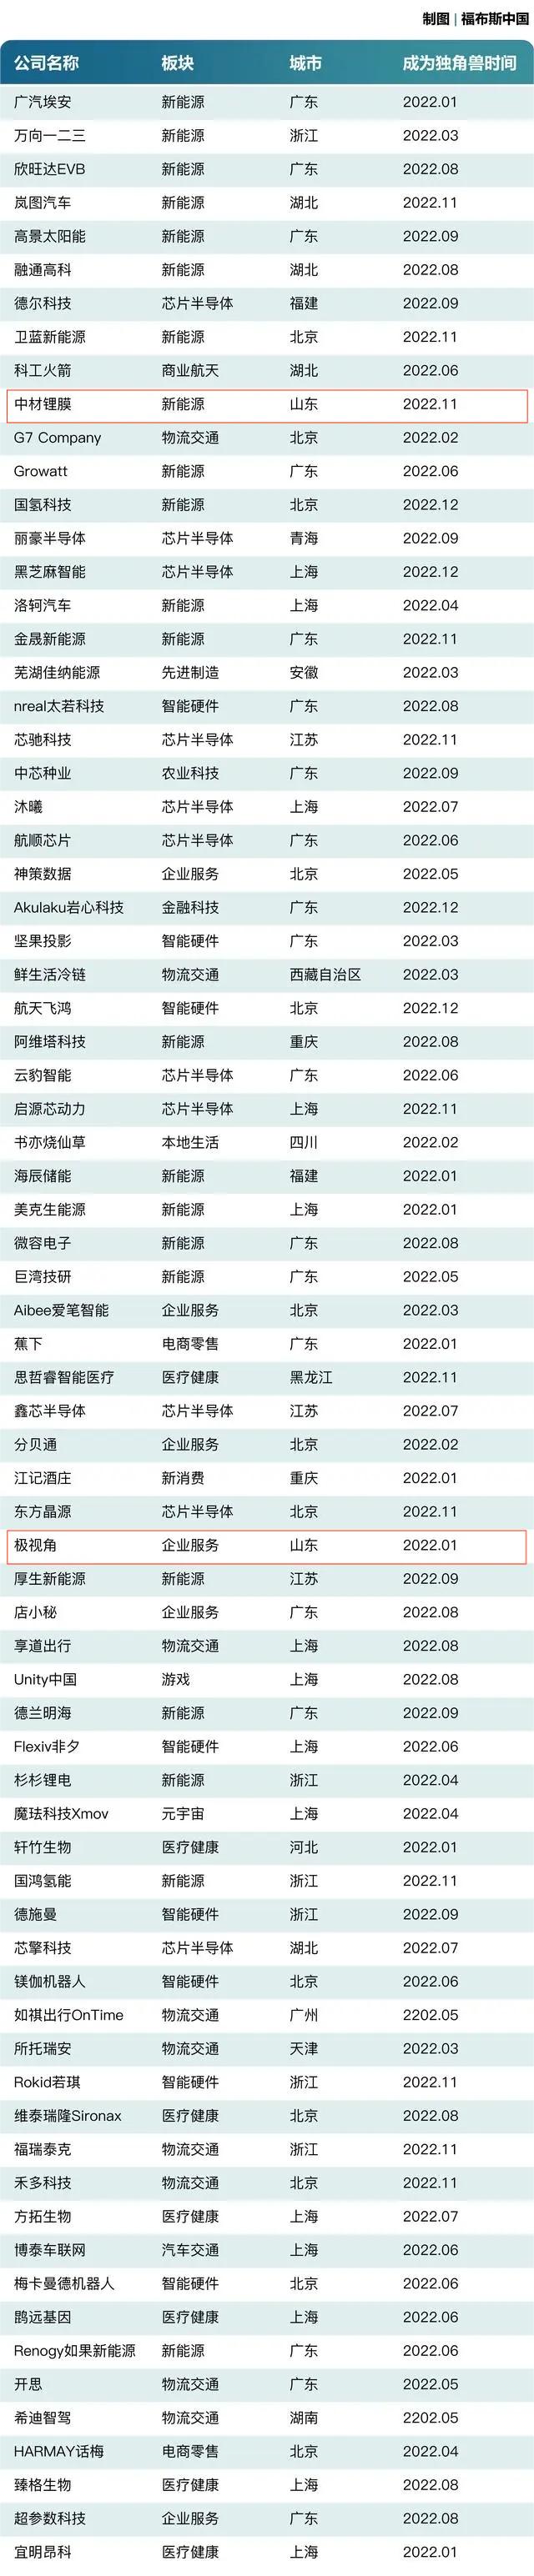 山东2家企业跻身福布斯中国2022新晋独角兽榜单